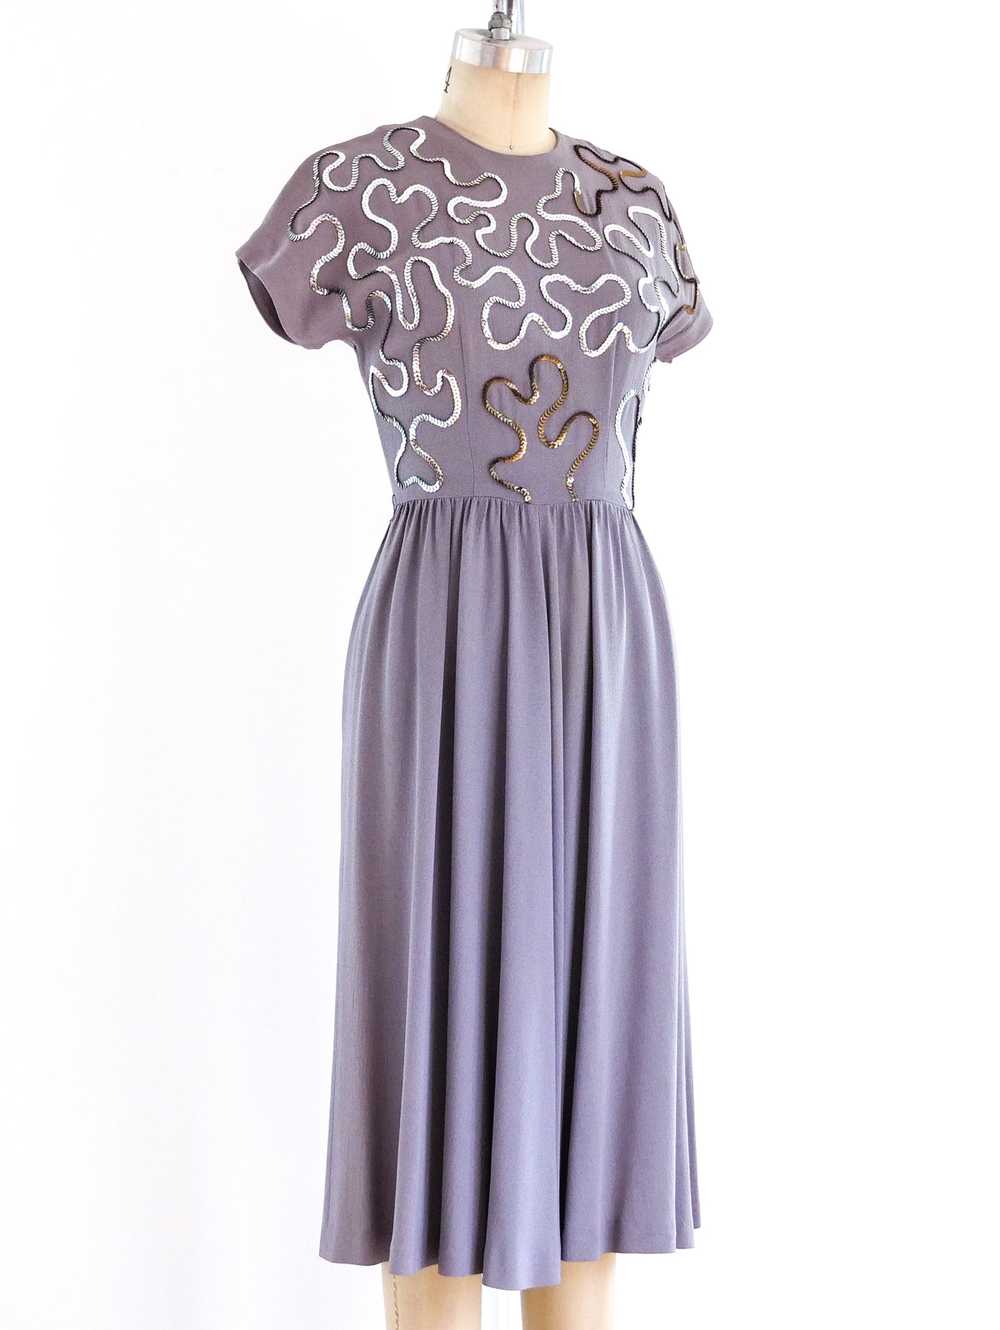 1940's Soutache Sequin Dress - image 3